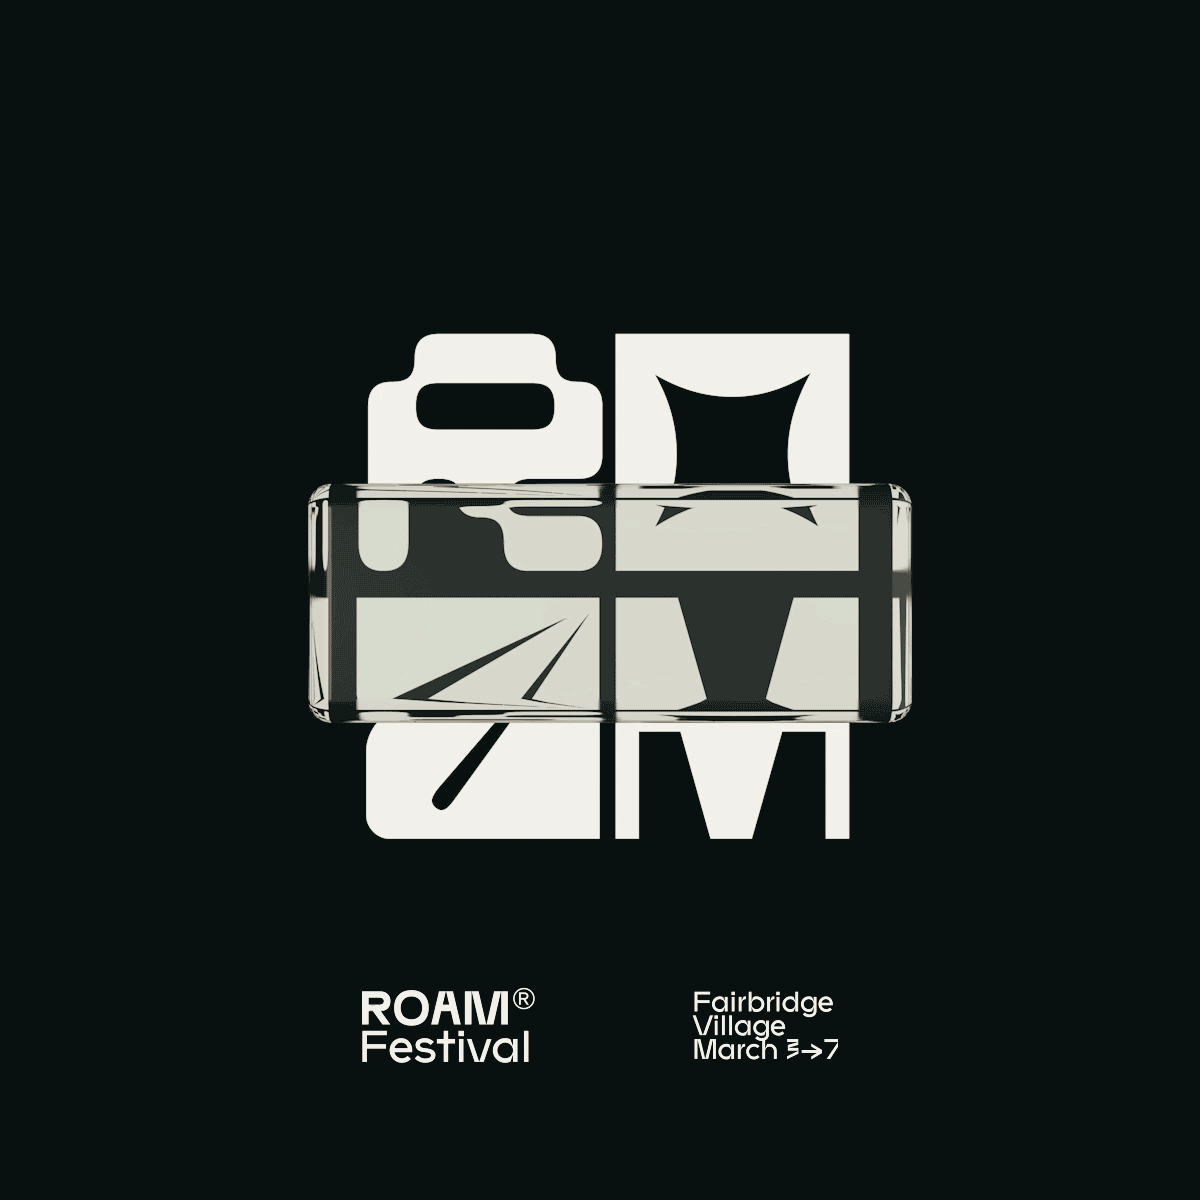 Identity design for ROAM festival by StudioThinkTank